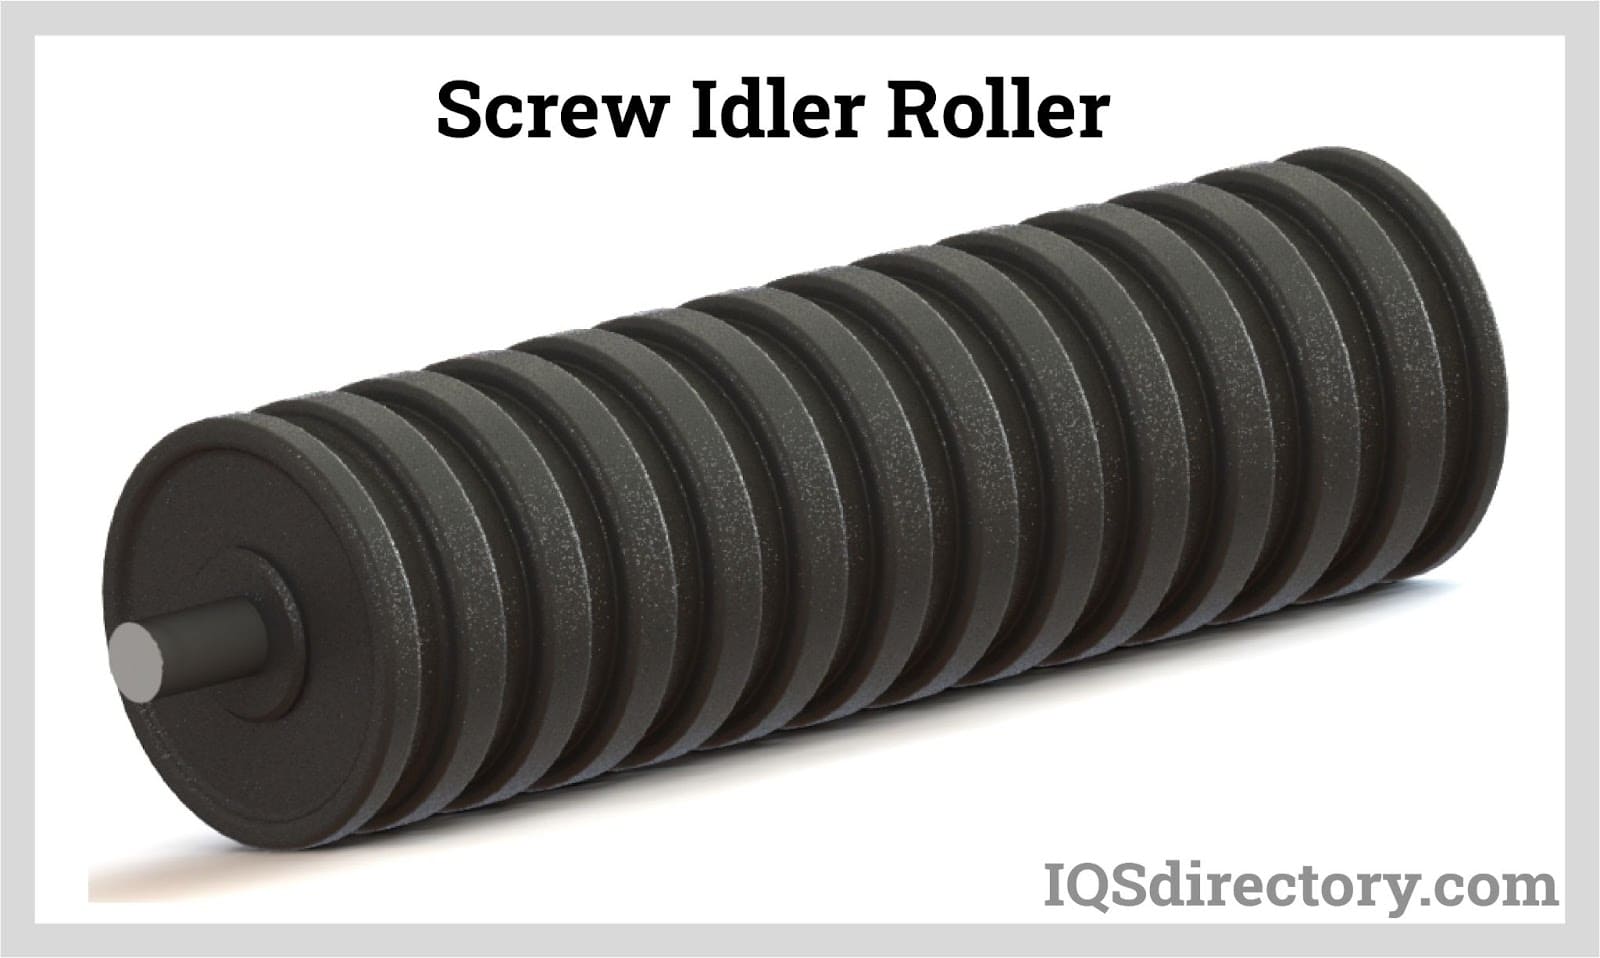  Screw Idler Roller